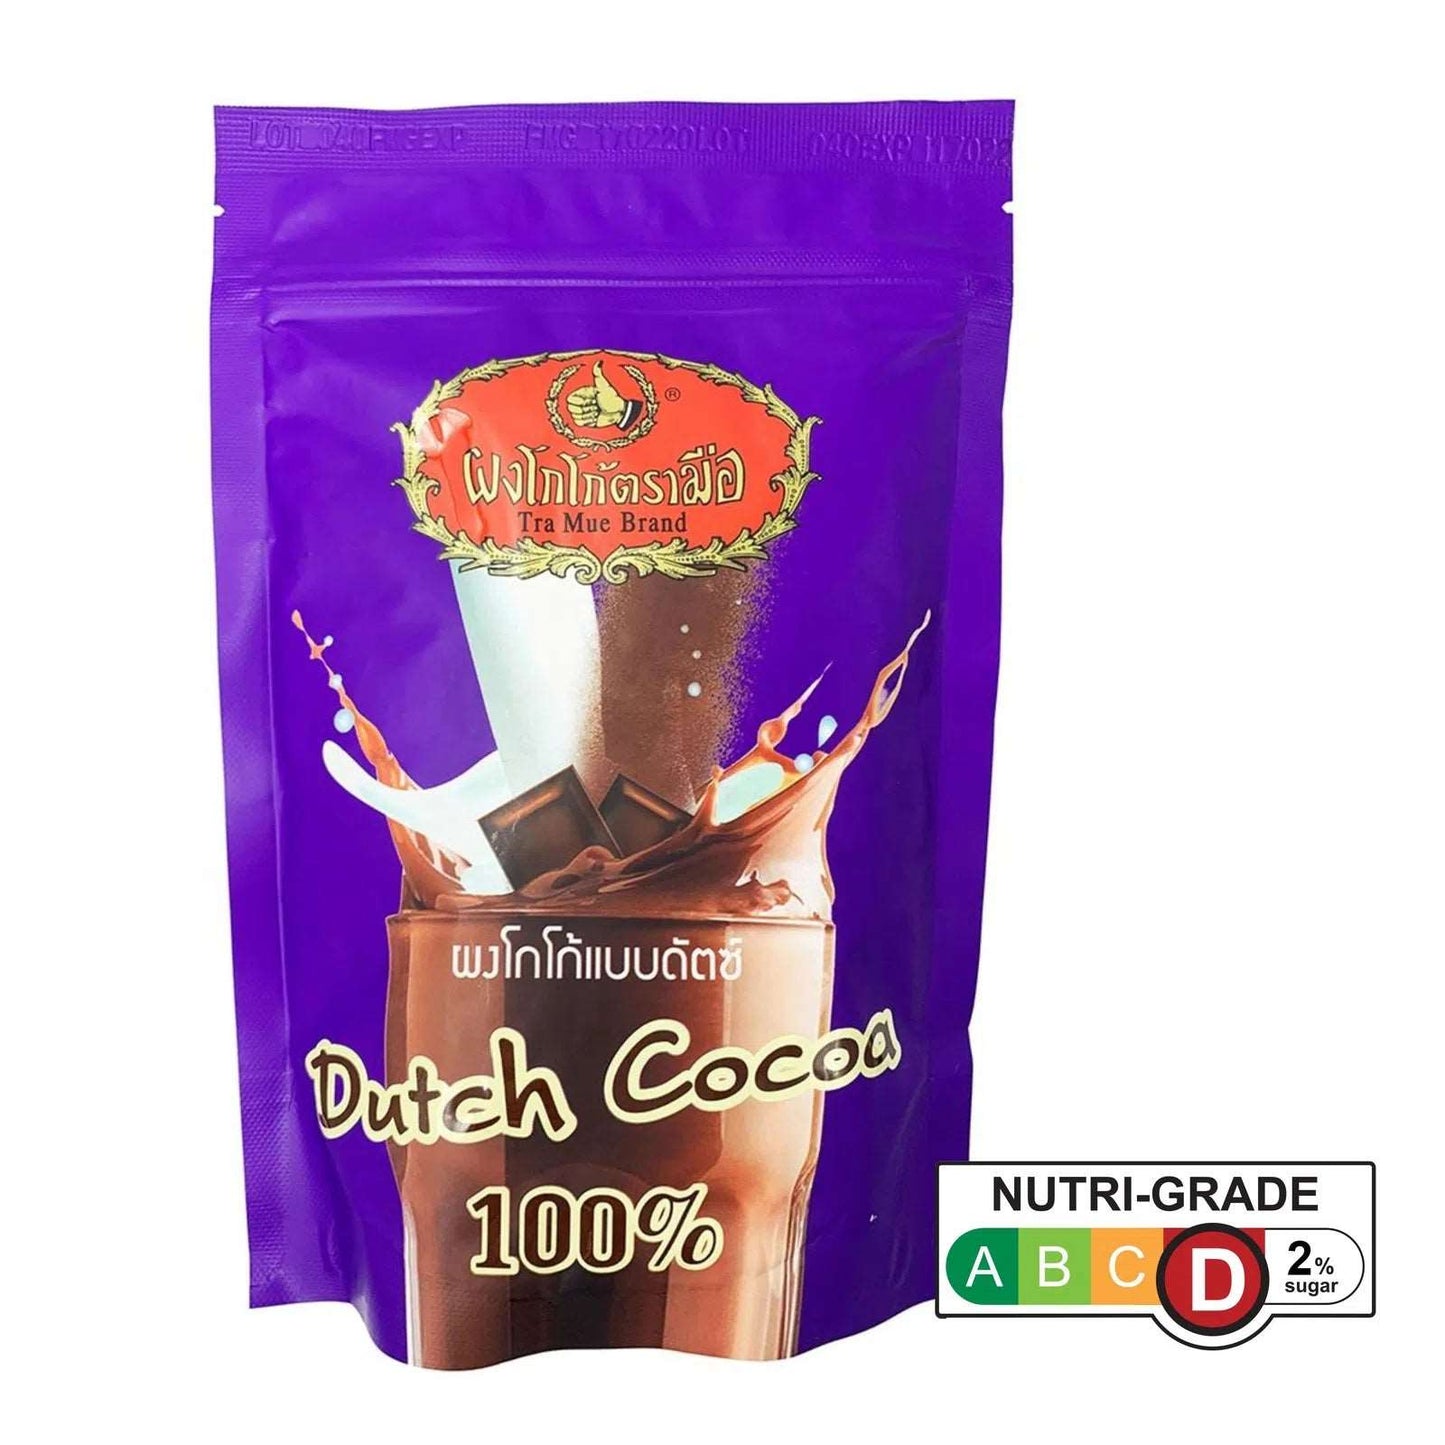 Dutch Cocoa